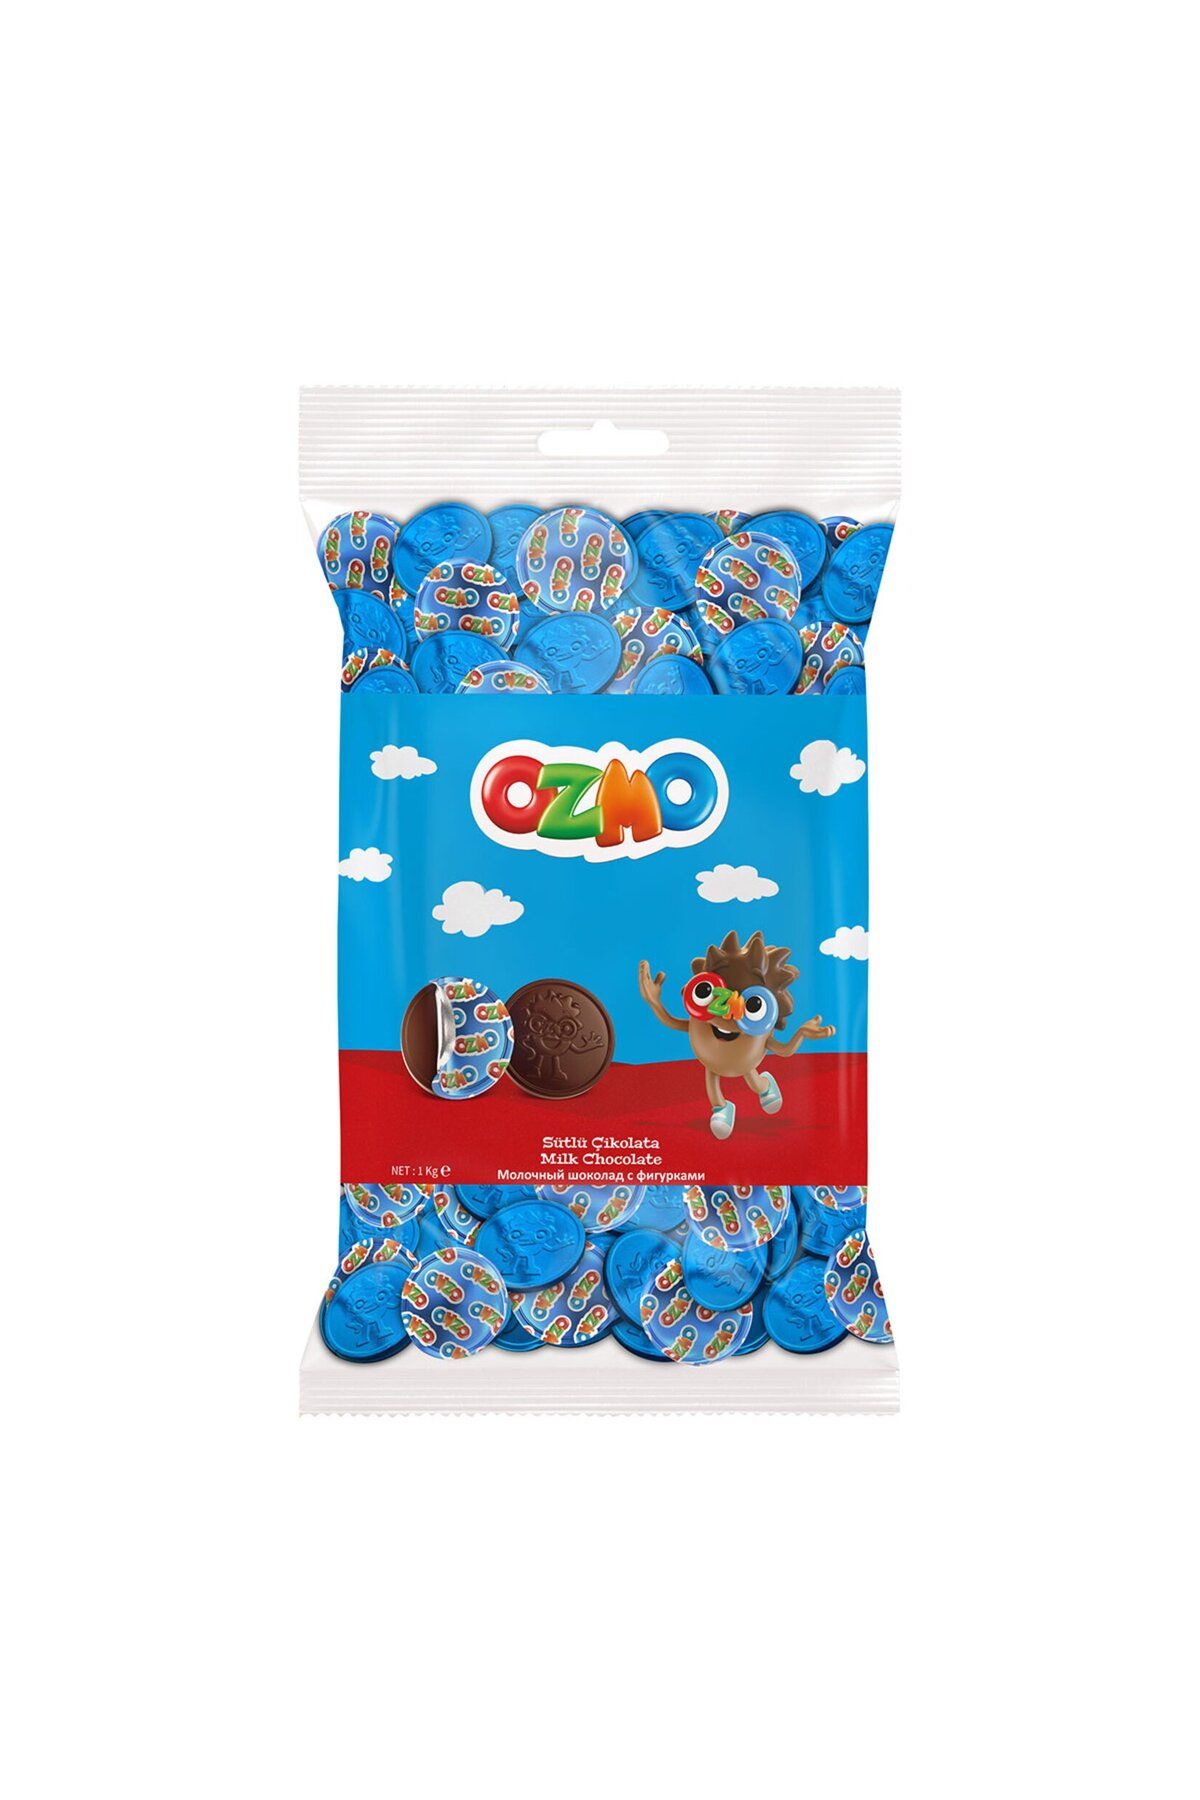 Şölen Ozmo Para Çikolata 1 Kg